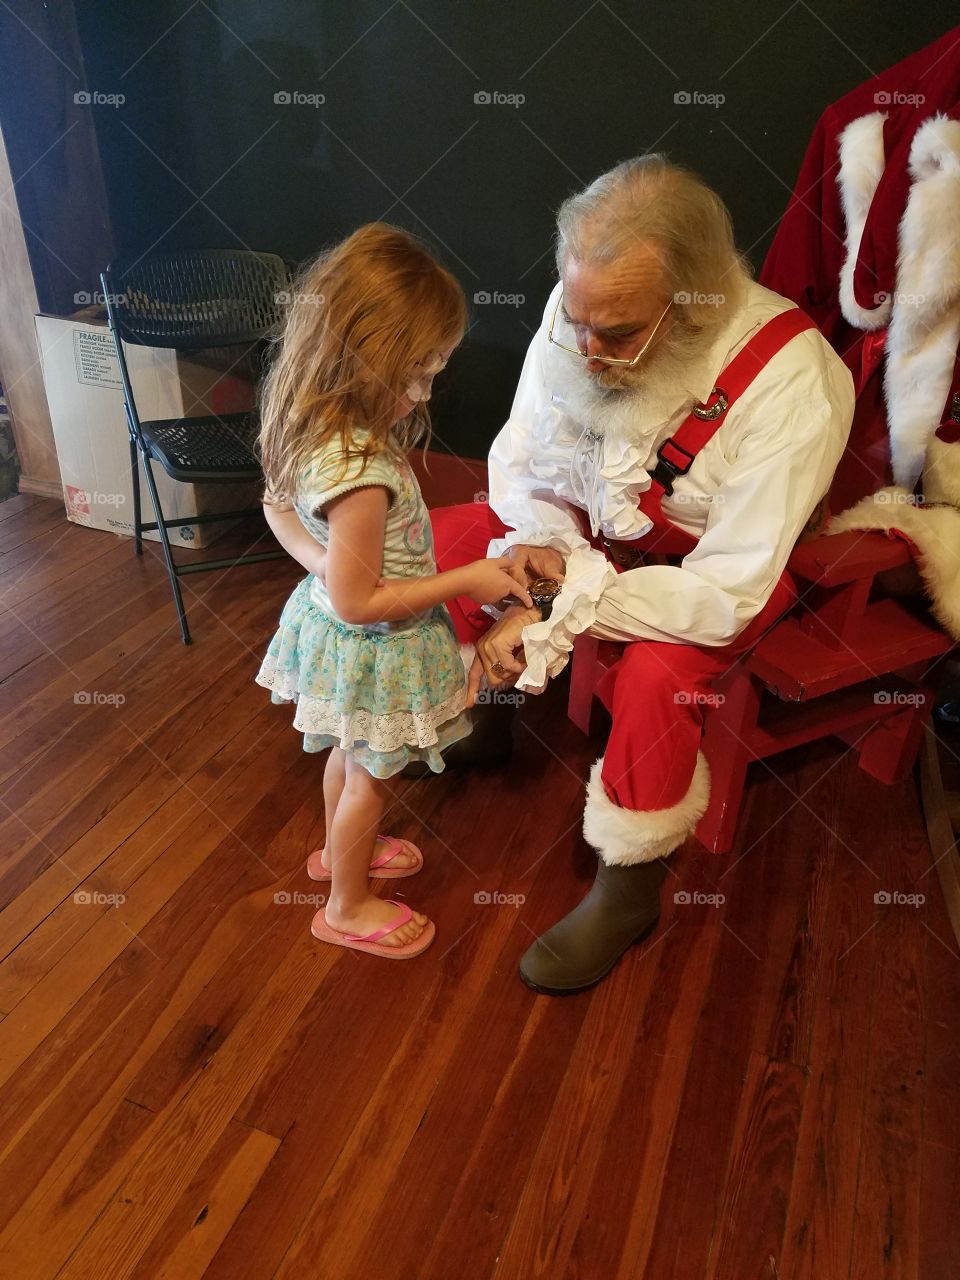 meeting Santa